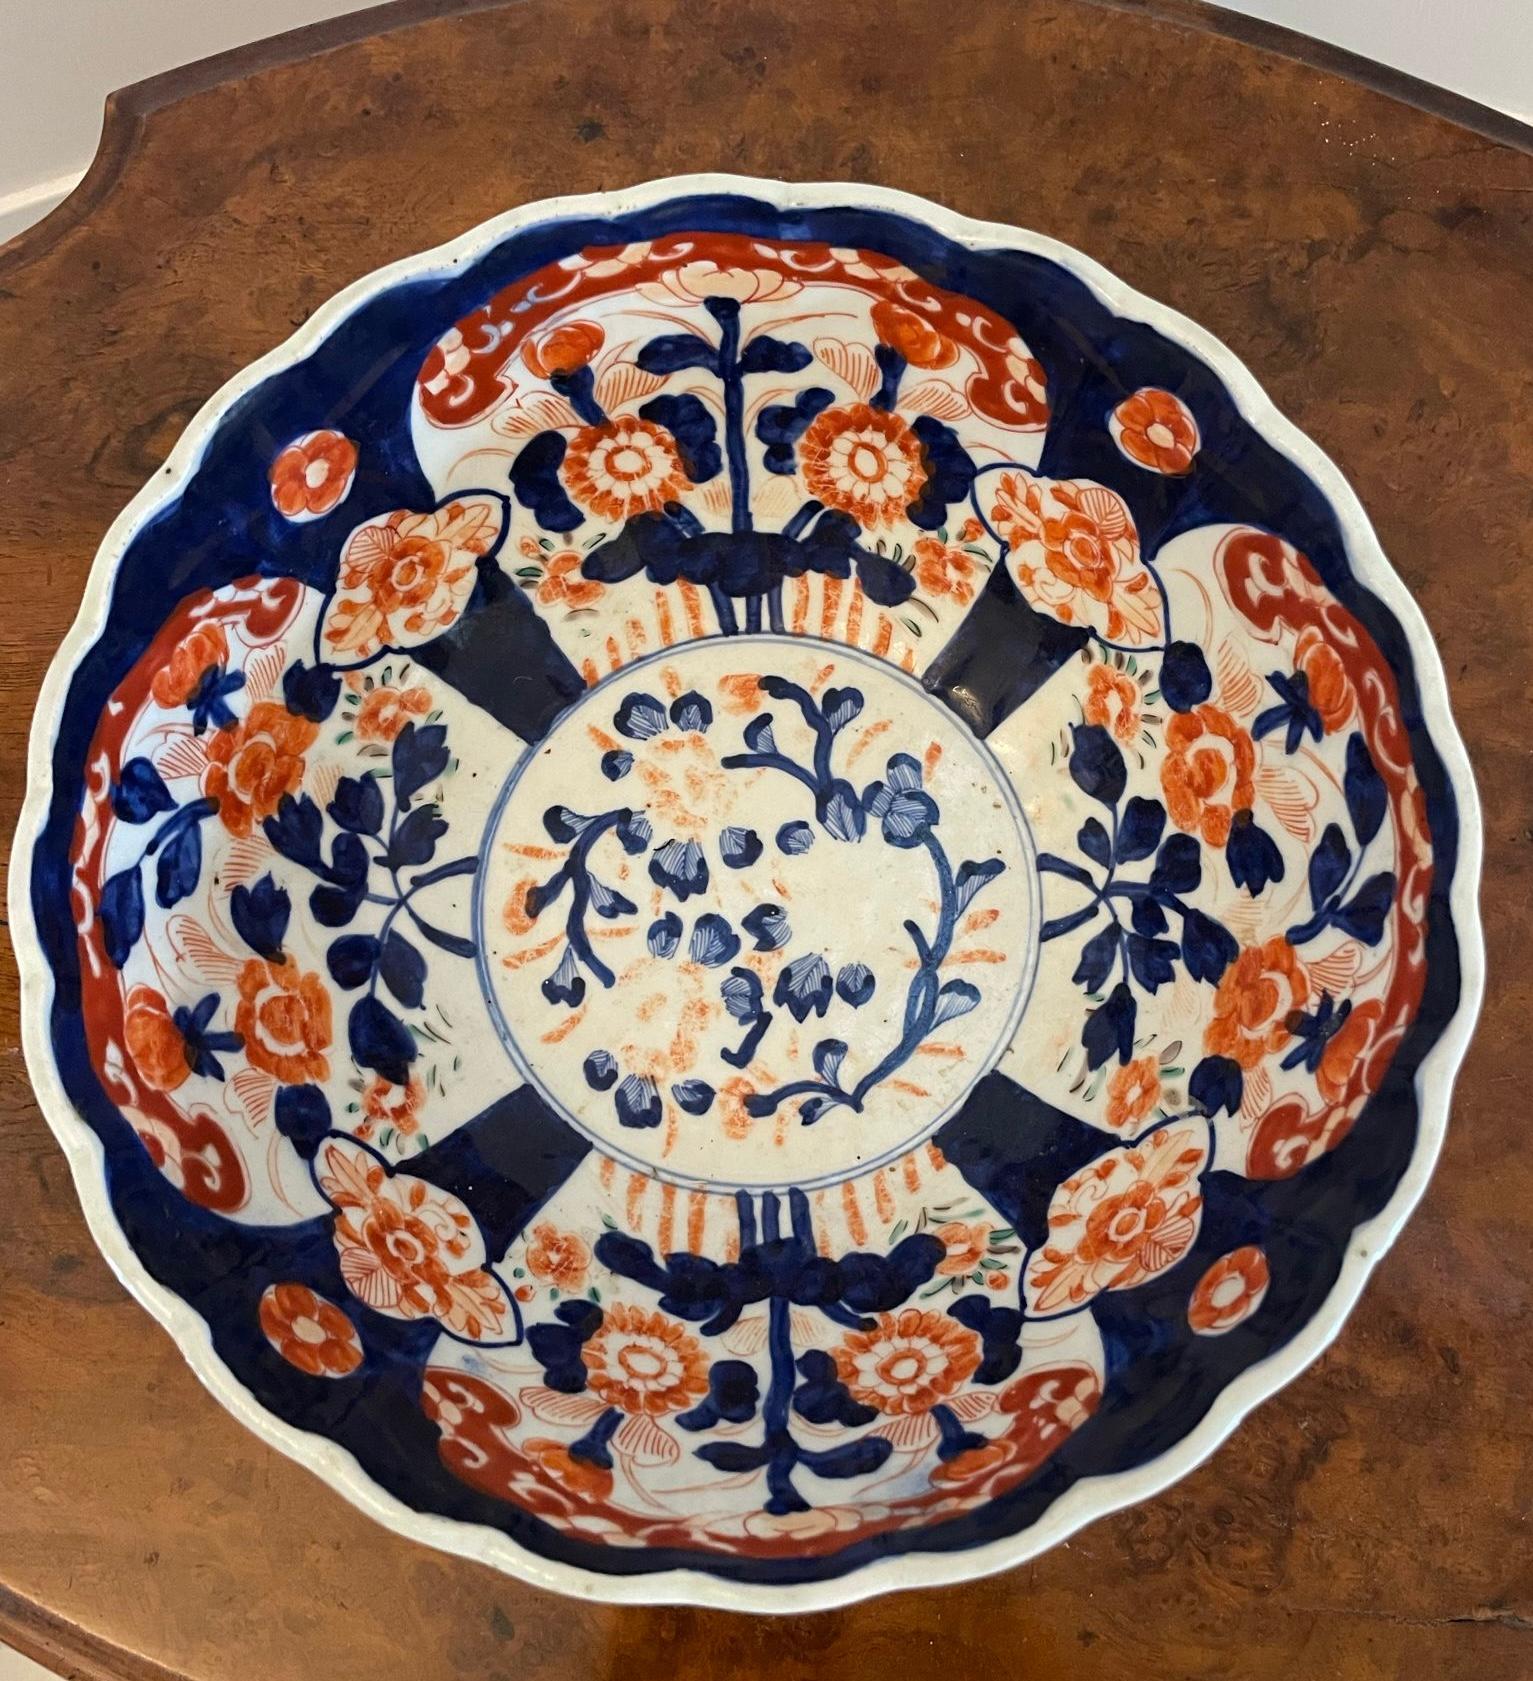 Antike japanische Imari-Schale von hoher Qualität, mit einer japanischen Imari-Schale in Wellenform mit wunderschöner handgemalter Dekoration in den Farben Rot, Blau, Orange und Weiß 


In schönem Originalzustand


Abmessungen:
H 10 x B 24,5 x T